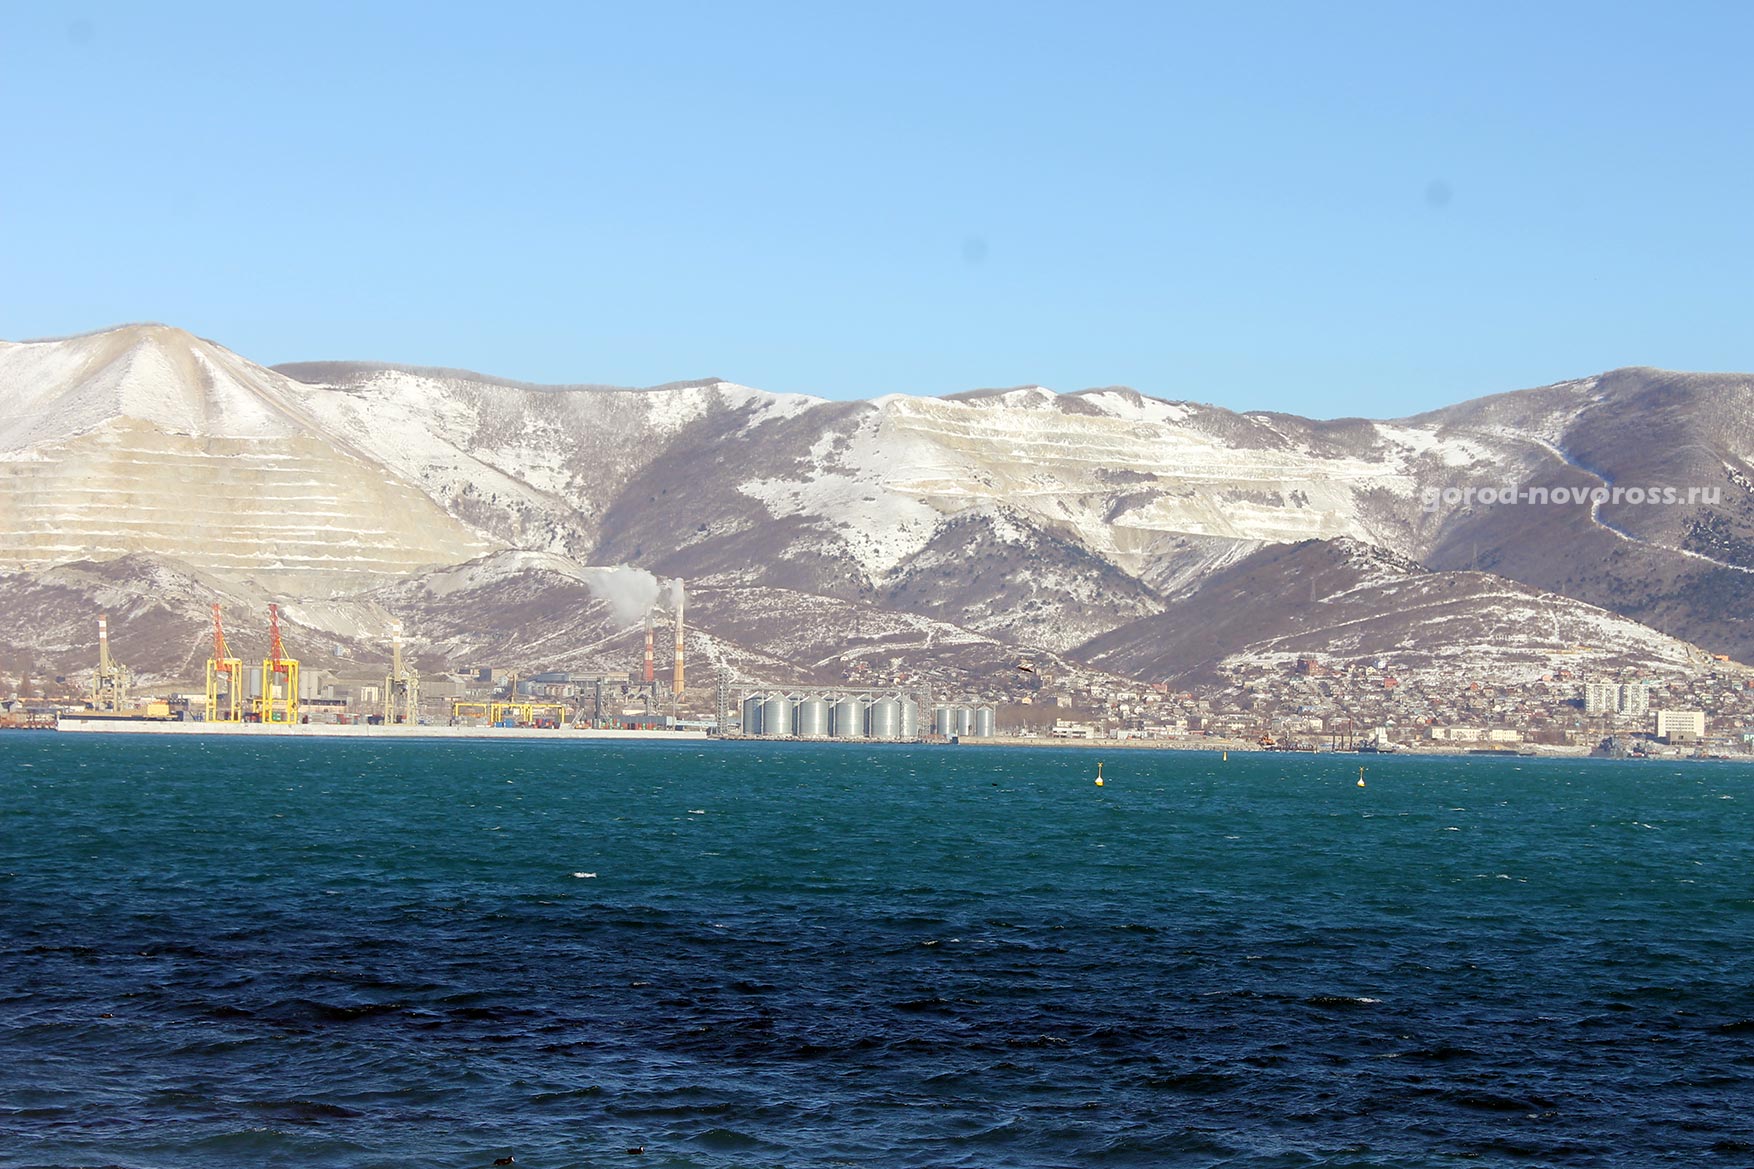 Вид на море, горы, зерновой терминал. Зима 2014. Новороссийск